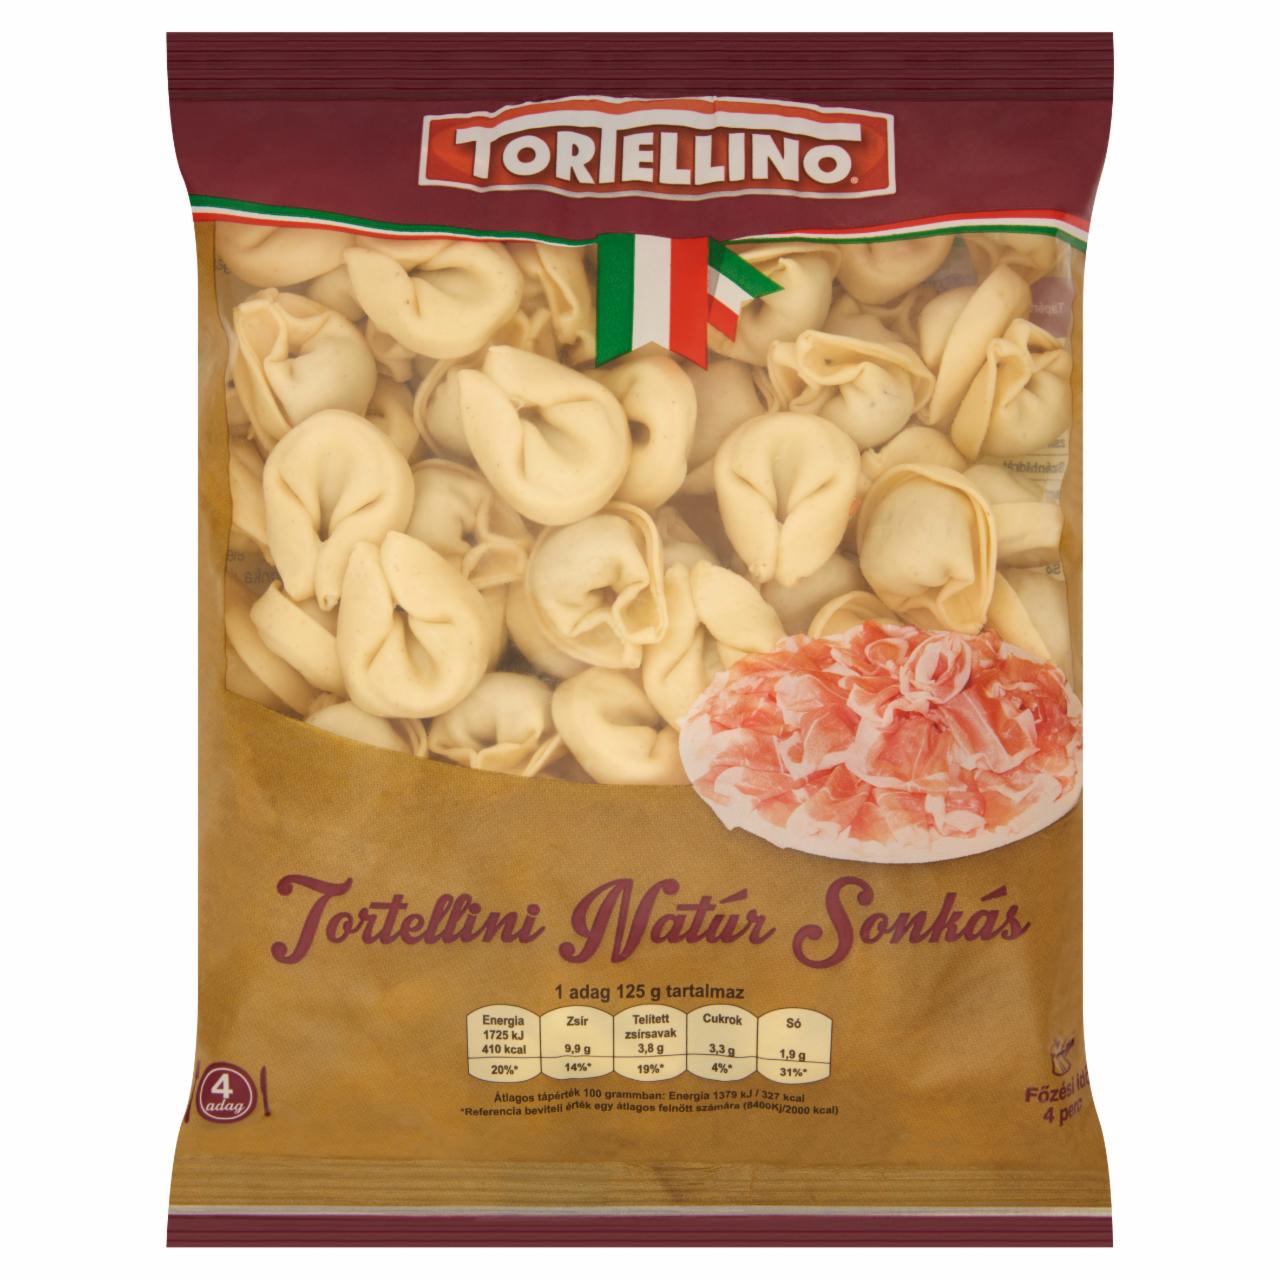 Képek - Tortellino Tortellini natúr sonkás töltelékkel töltött friss tészta 500 g